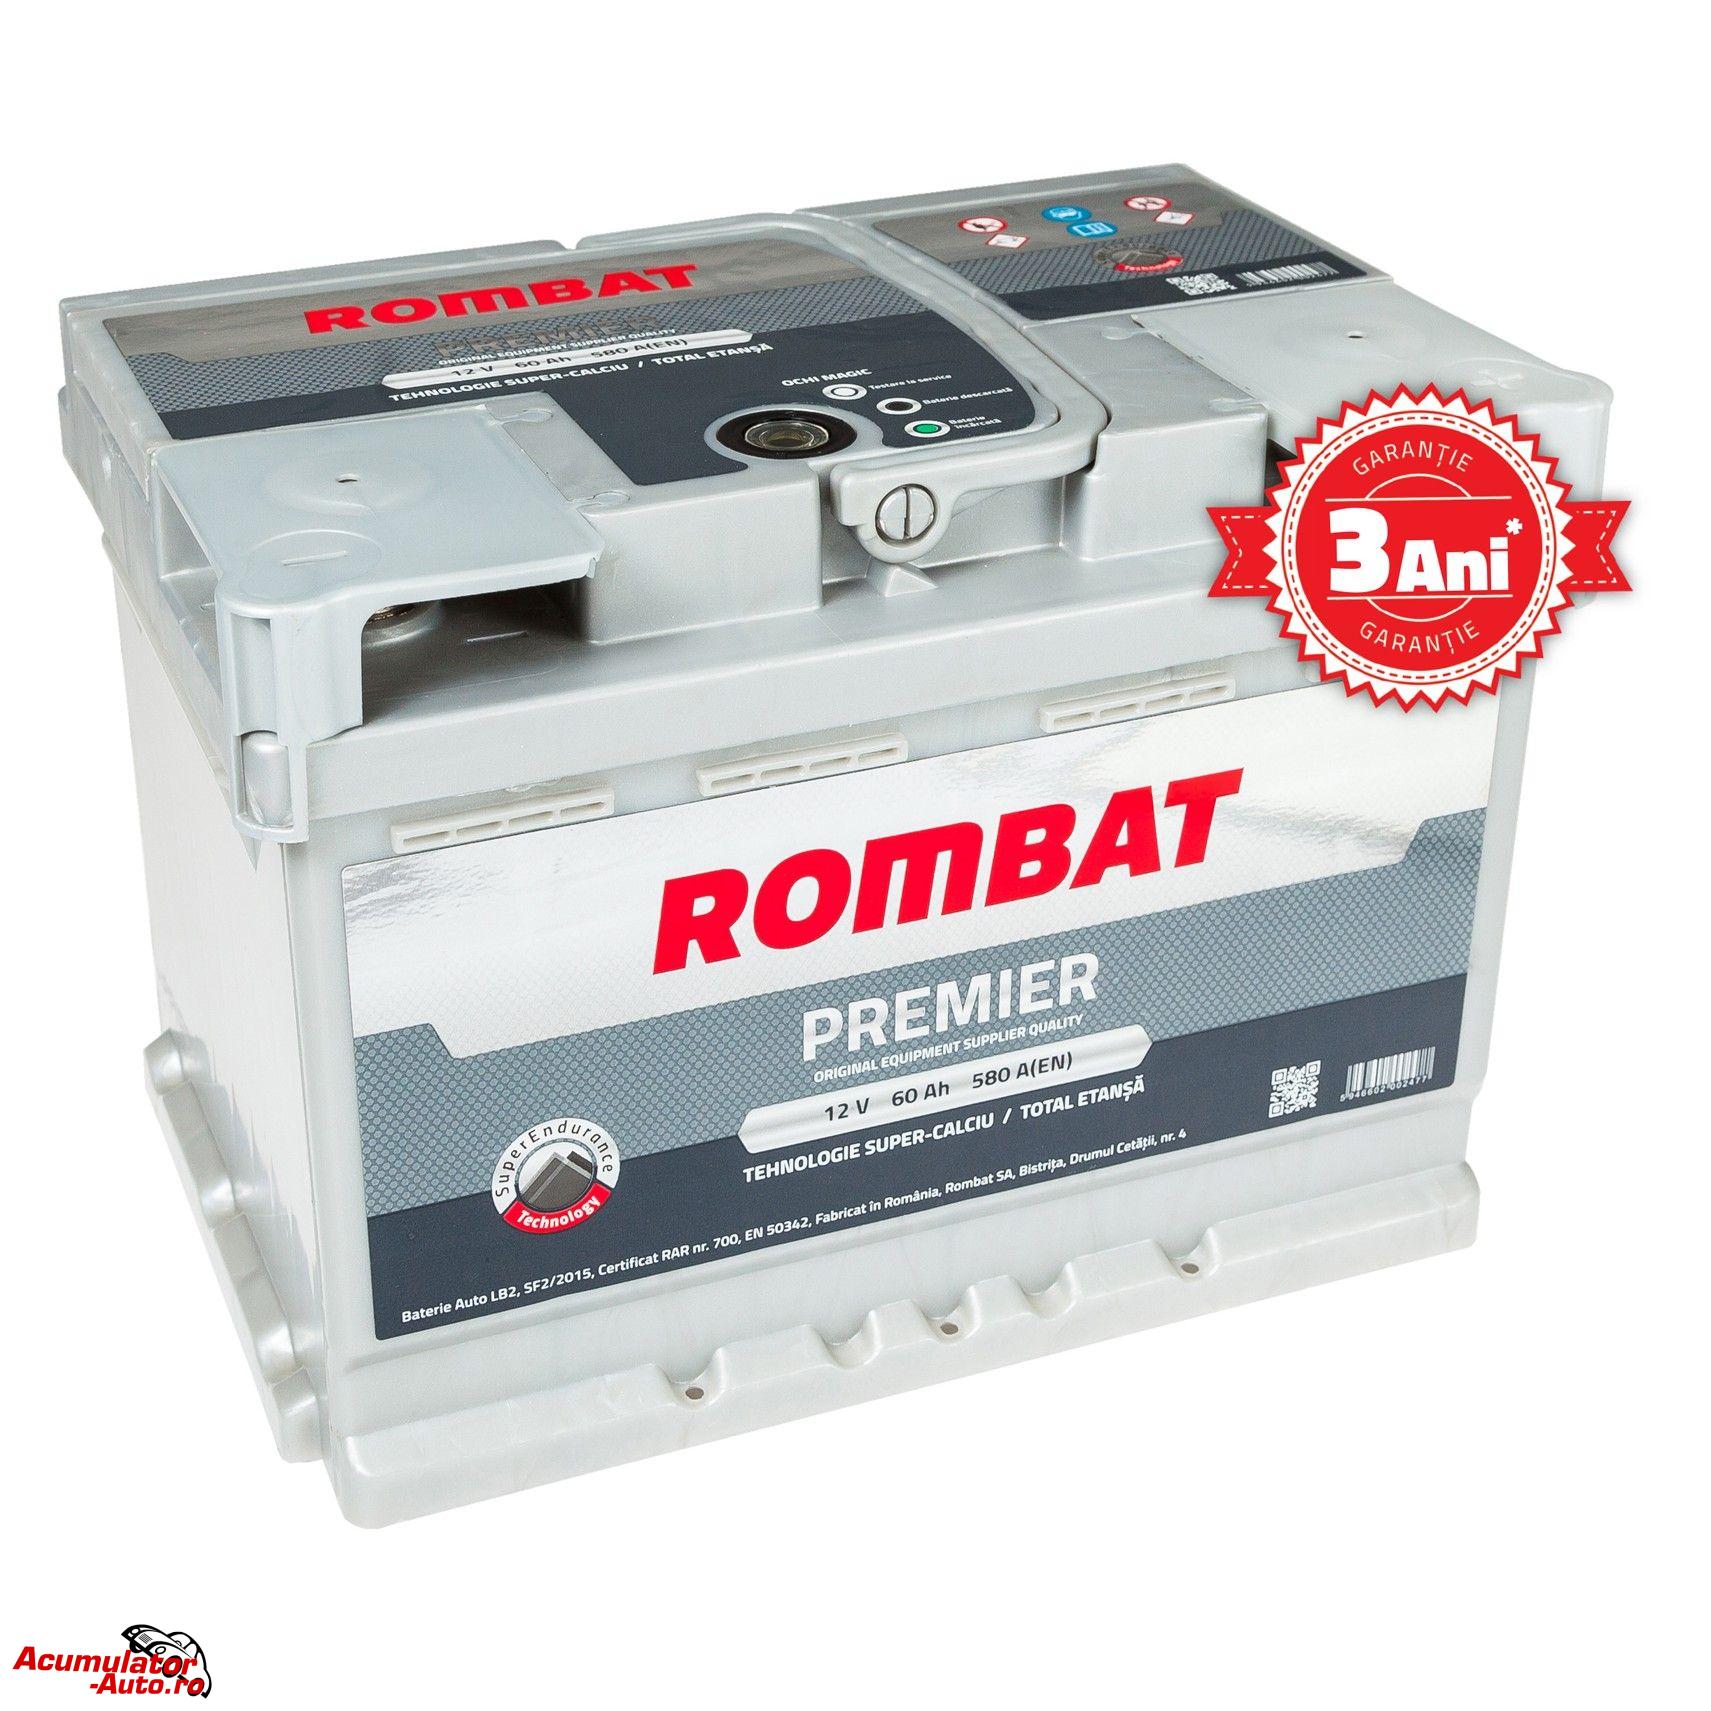 Acumulator auto ROMBAT Premier 60AH